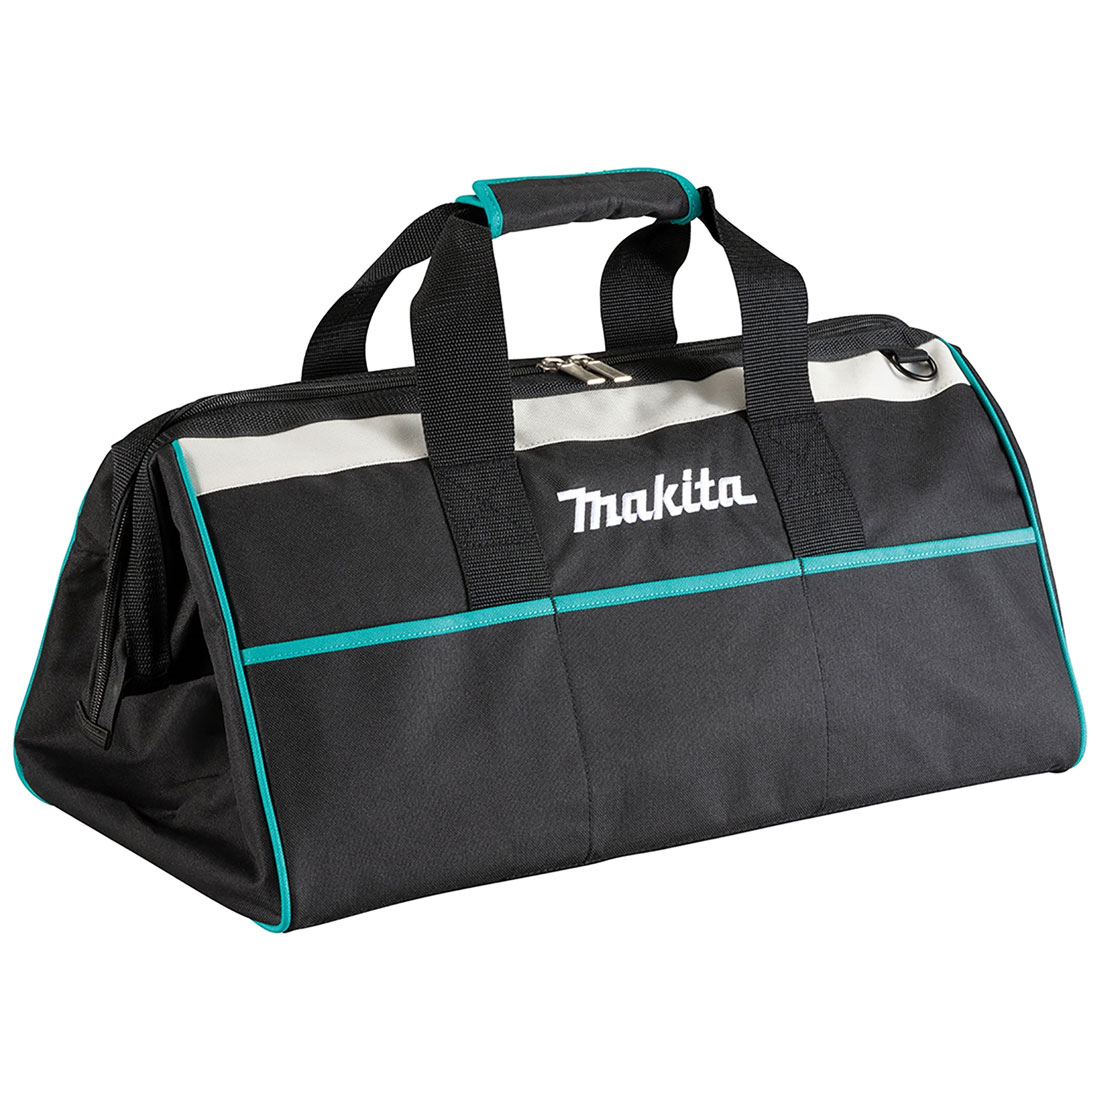 Makita 832411-9 XGT Large Tool Bag for RS001G